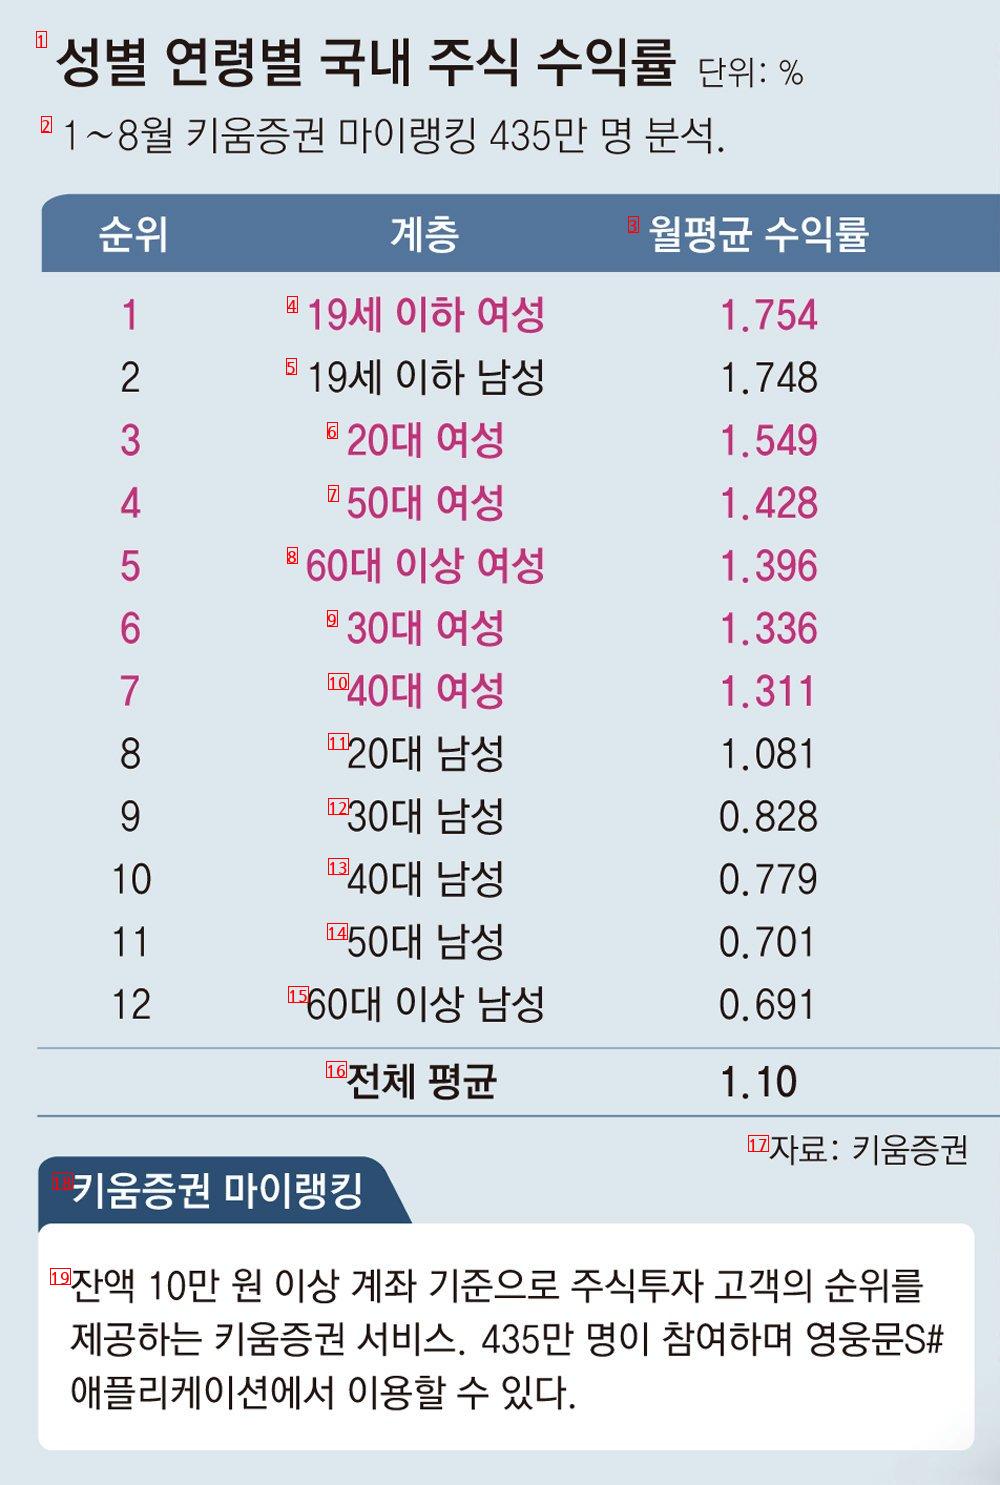 키움증권에서 발표한 한국인 주식투자 통계